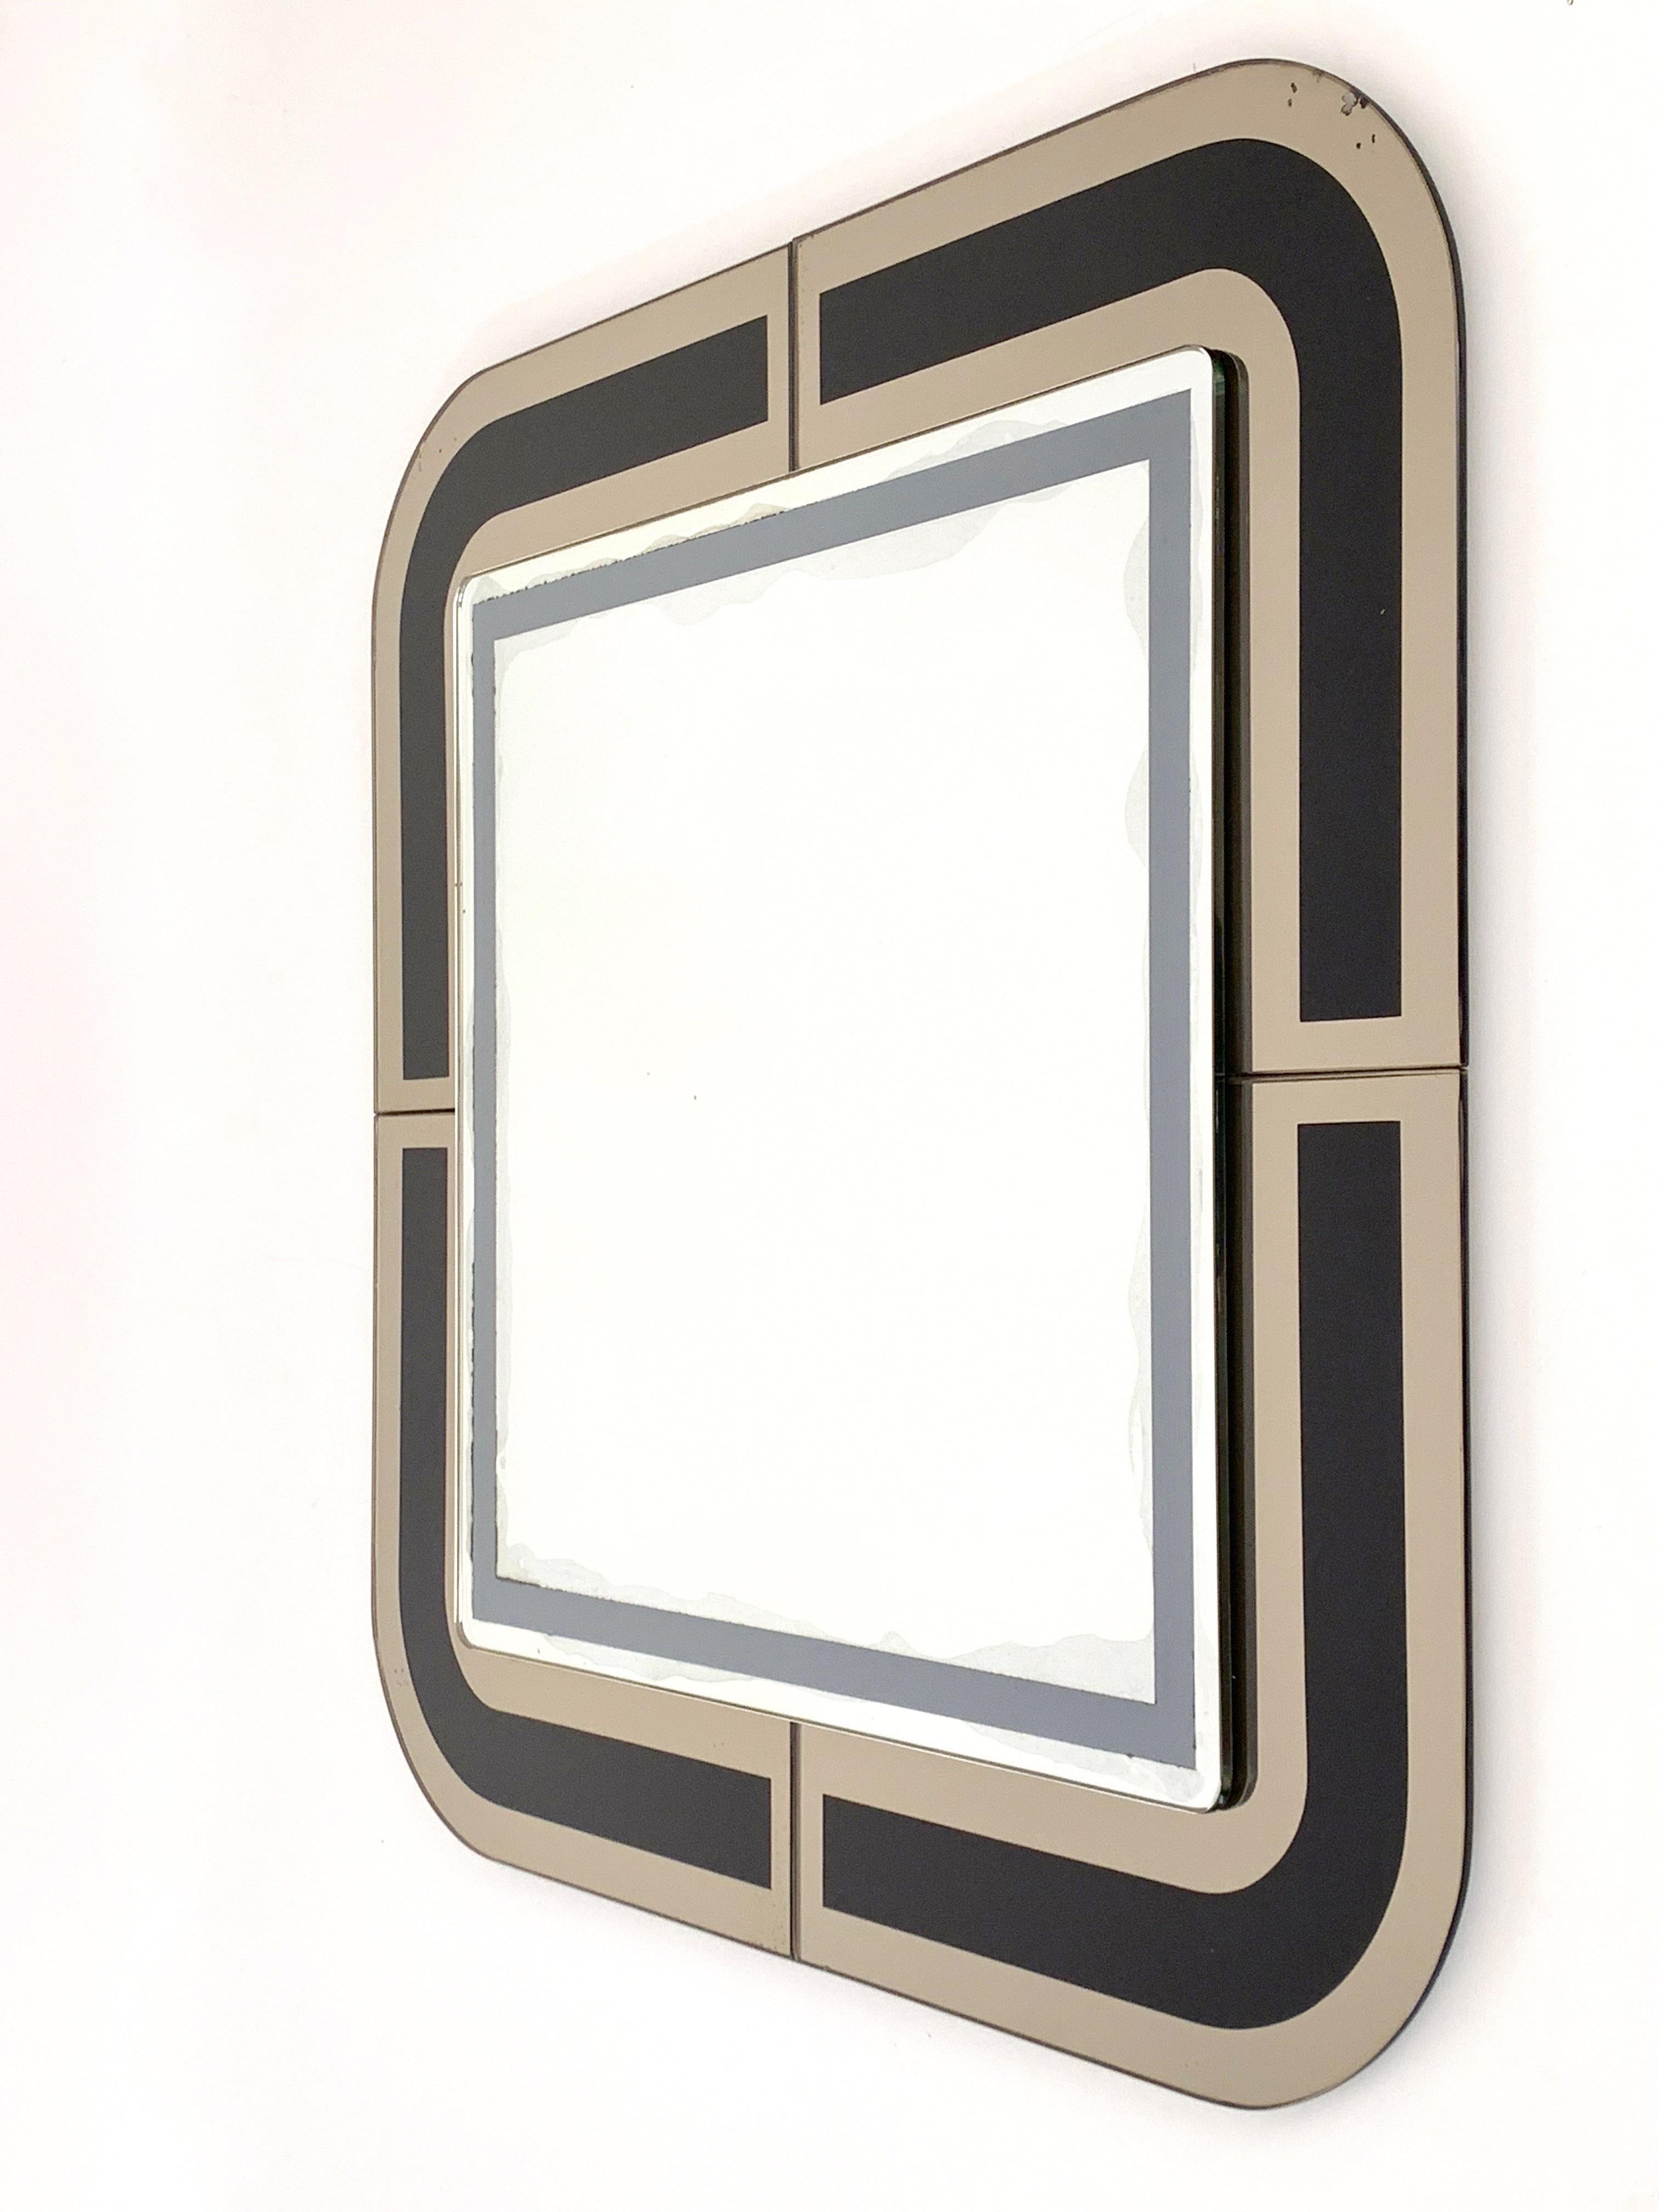 Quadratischer italienischer Spiegel mit Doppelrahmen, 1980er Jahre (Bronziert)